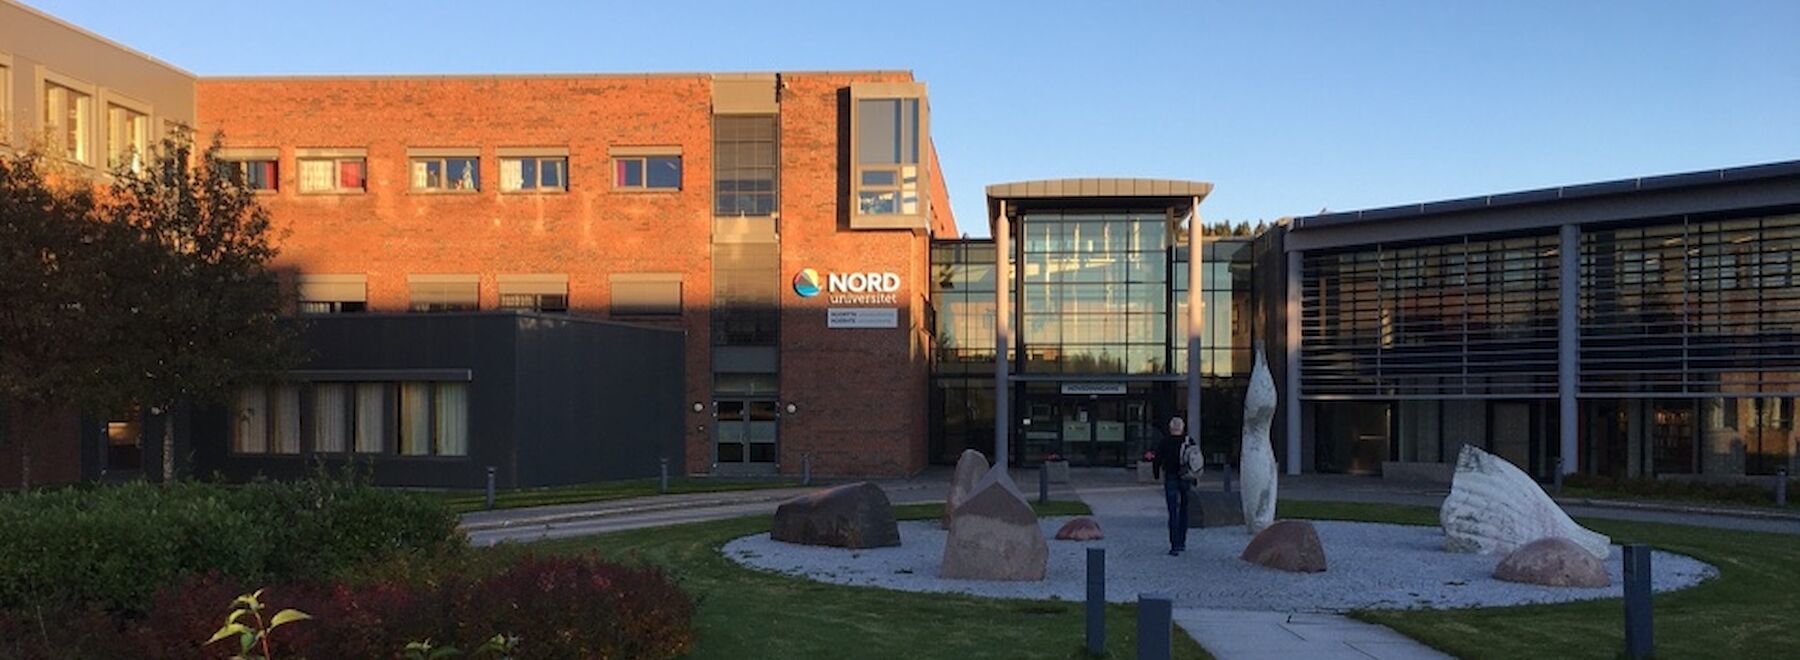 Nord University Bodø - neue Partneruniversität der PPH Augustinum in Norwegen